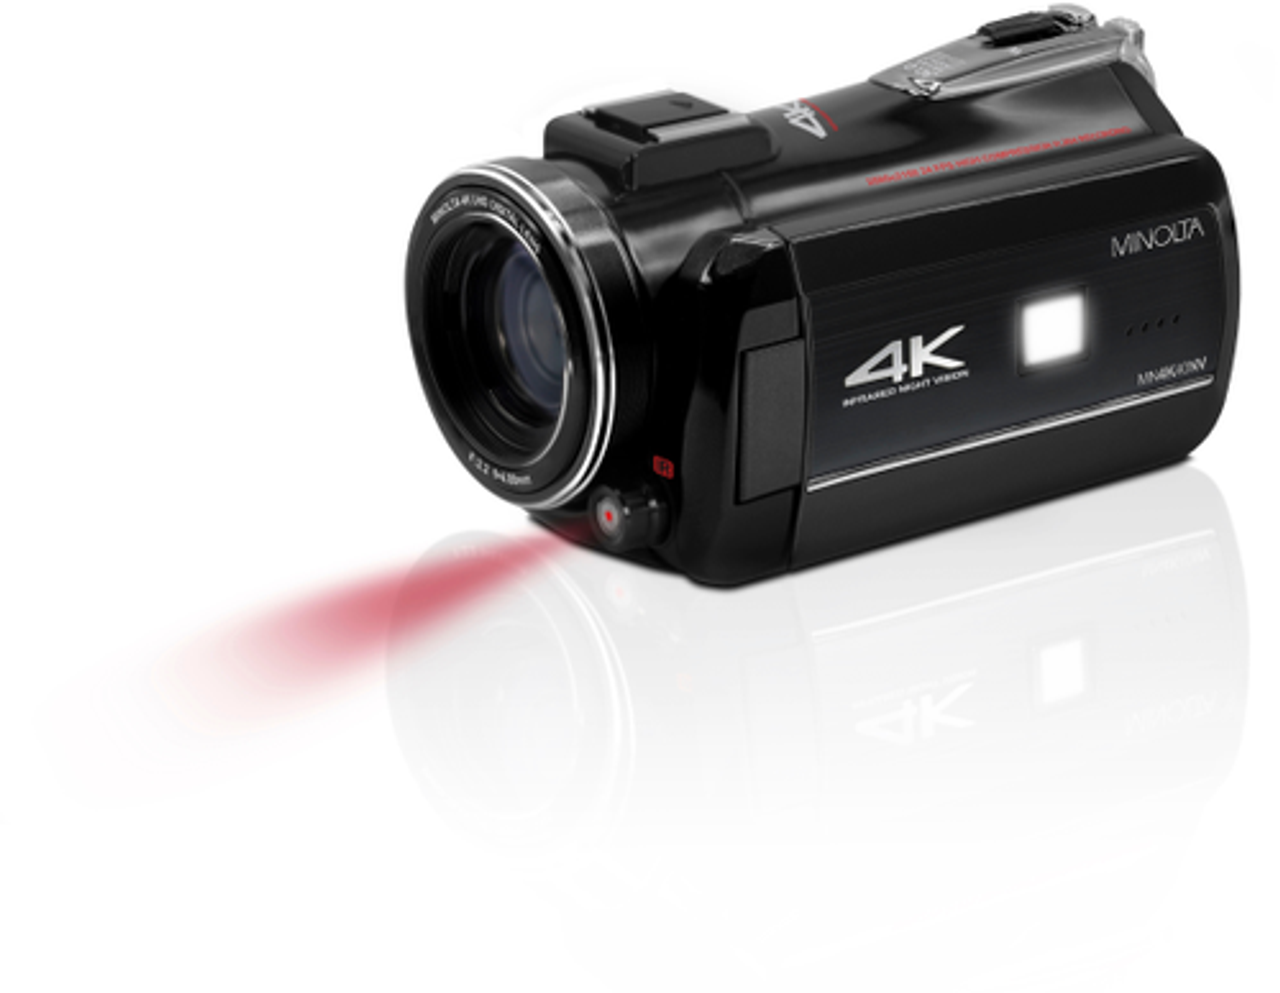 Konica Minolta - MN4K40NV 4K Ultra HD Night Vision Camcorder - Black